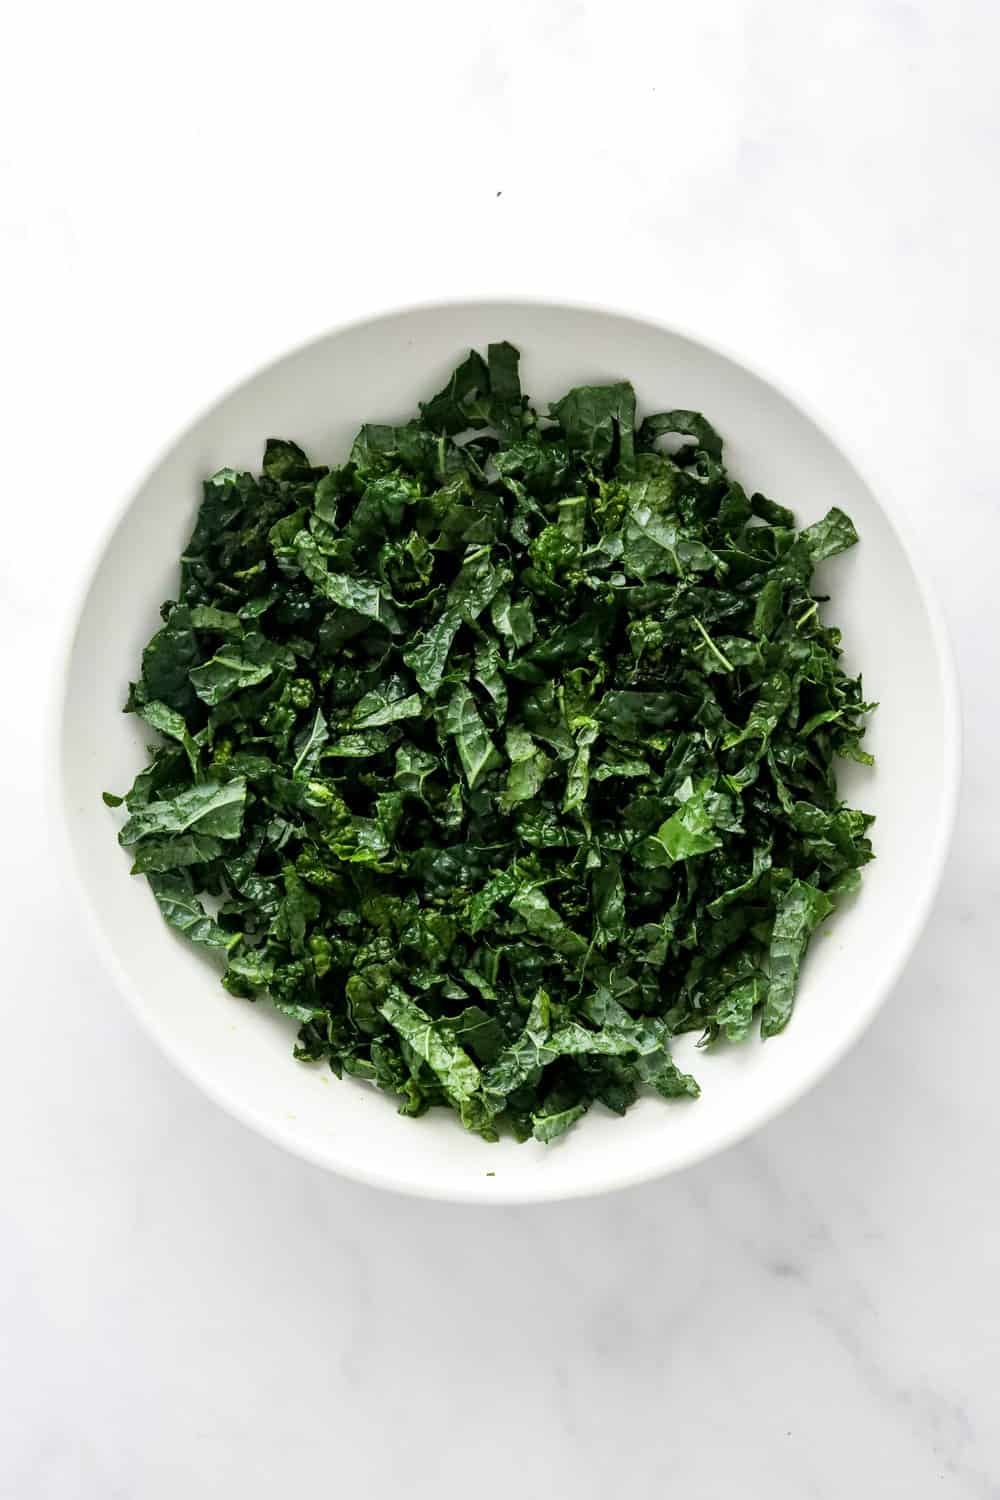 Raw, chopped kale in a white bowl.